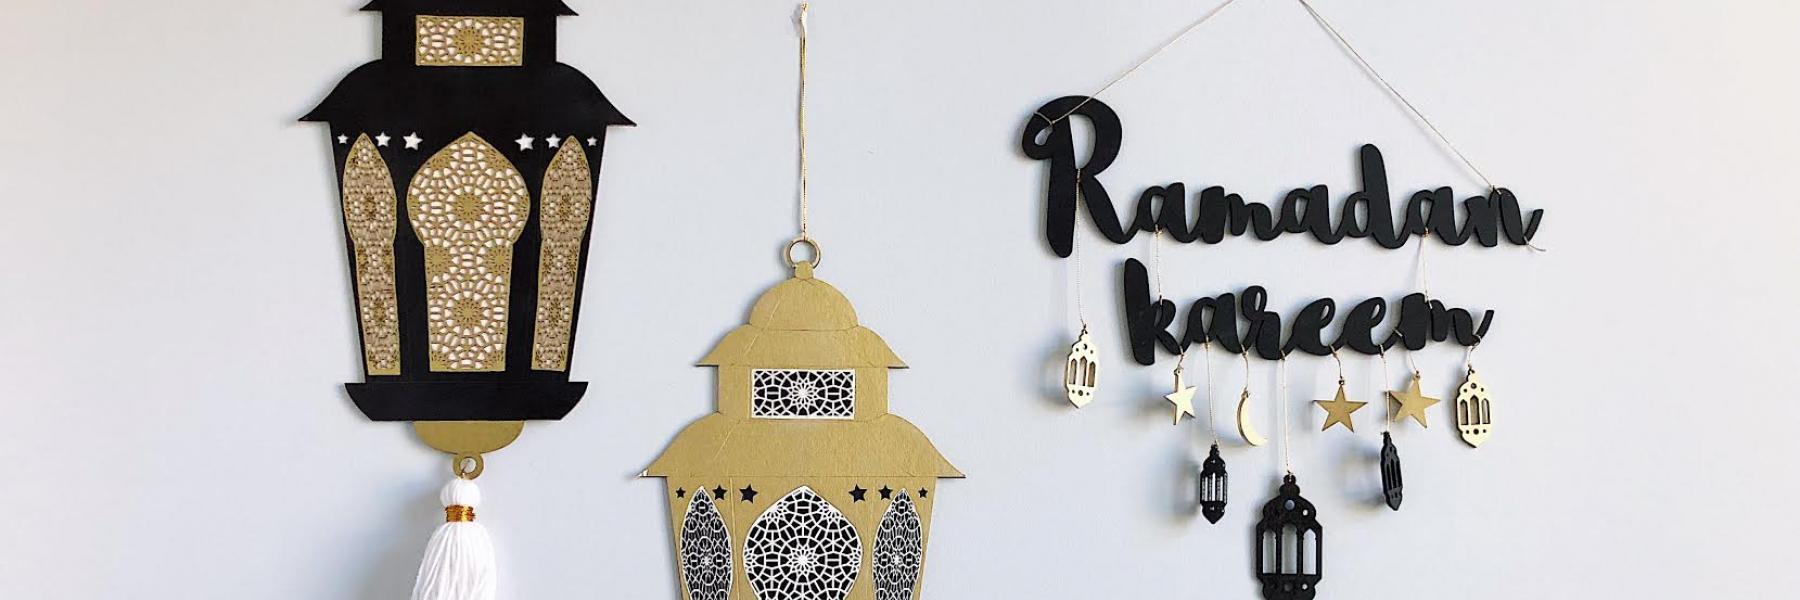 ديكورات رمضانية بسيطة لتزيين منزلك